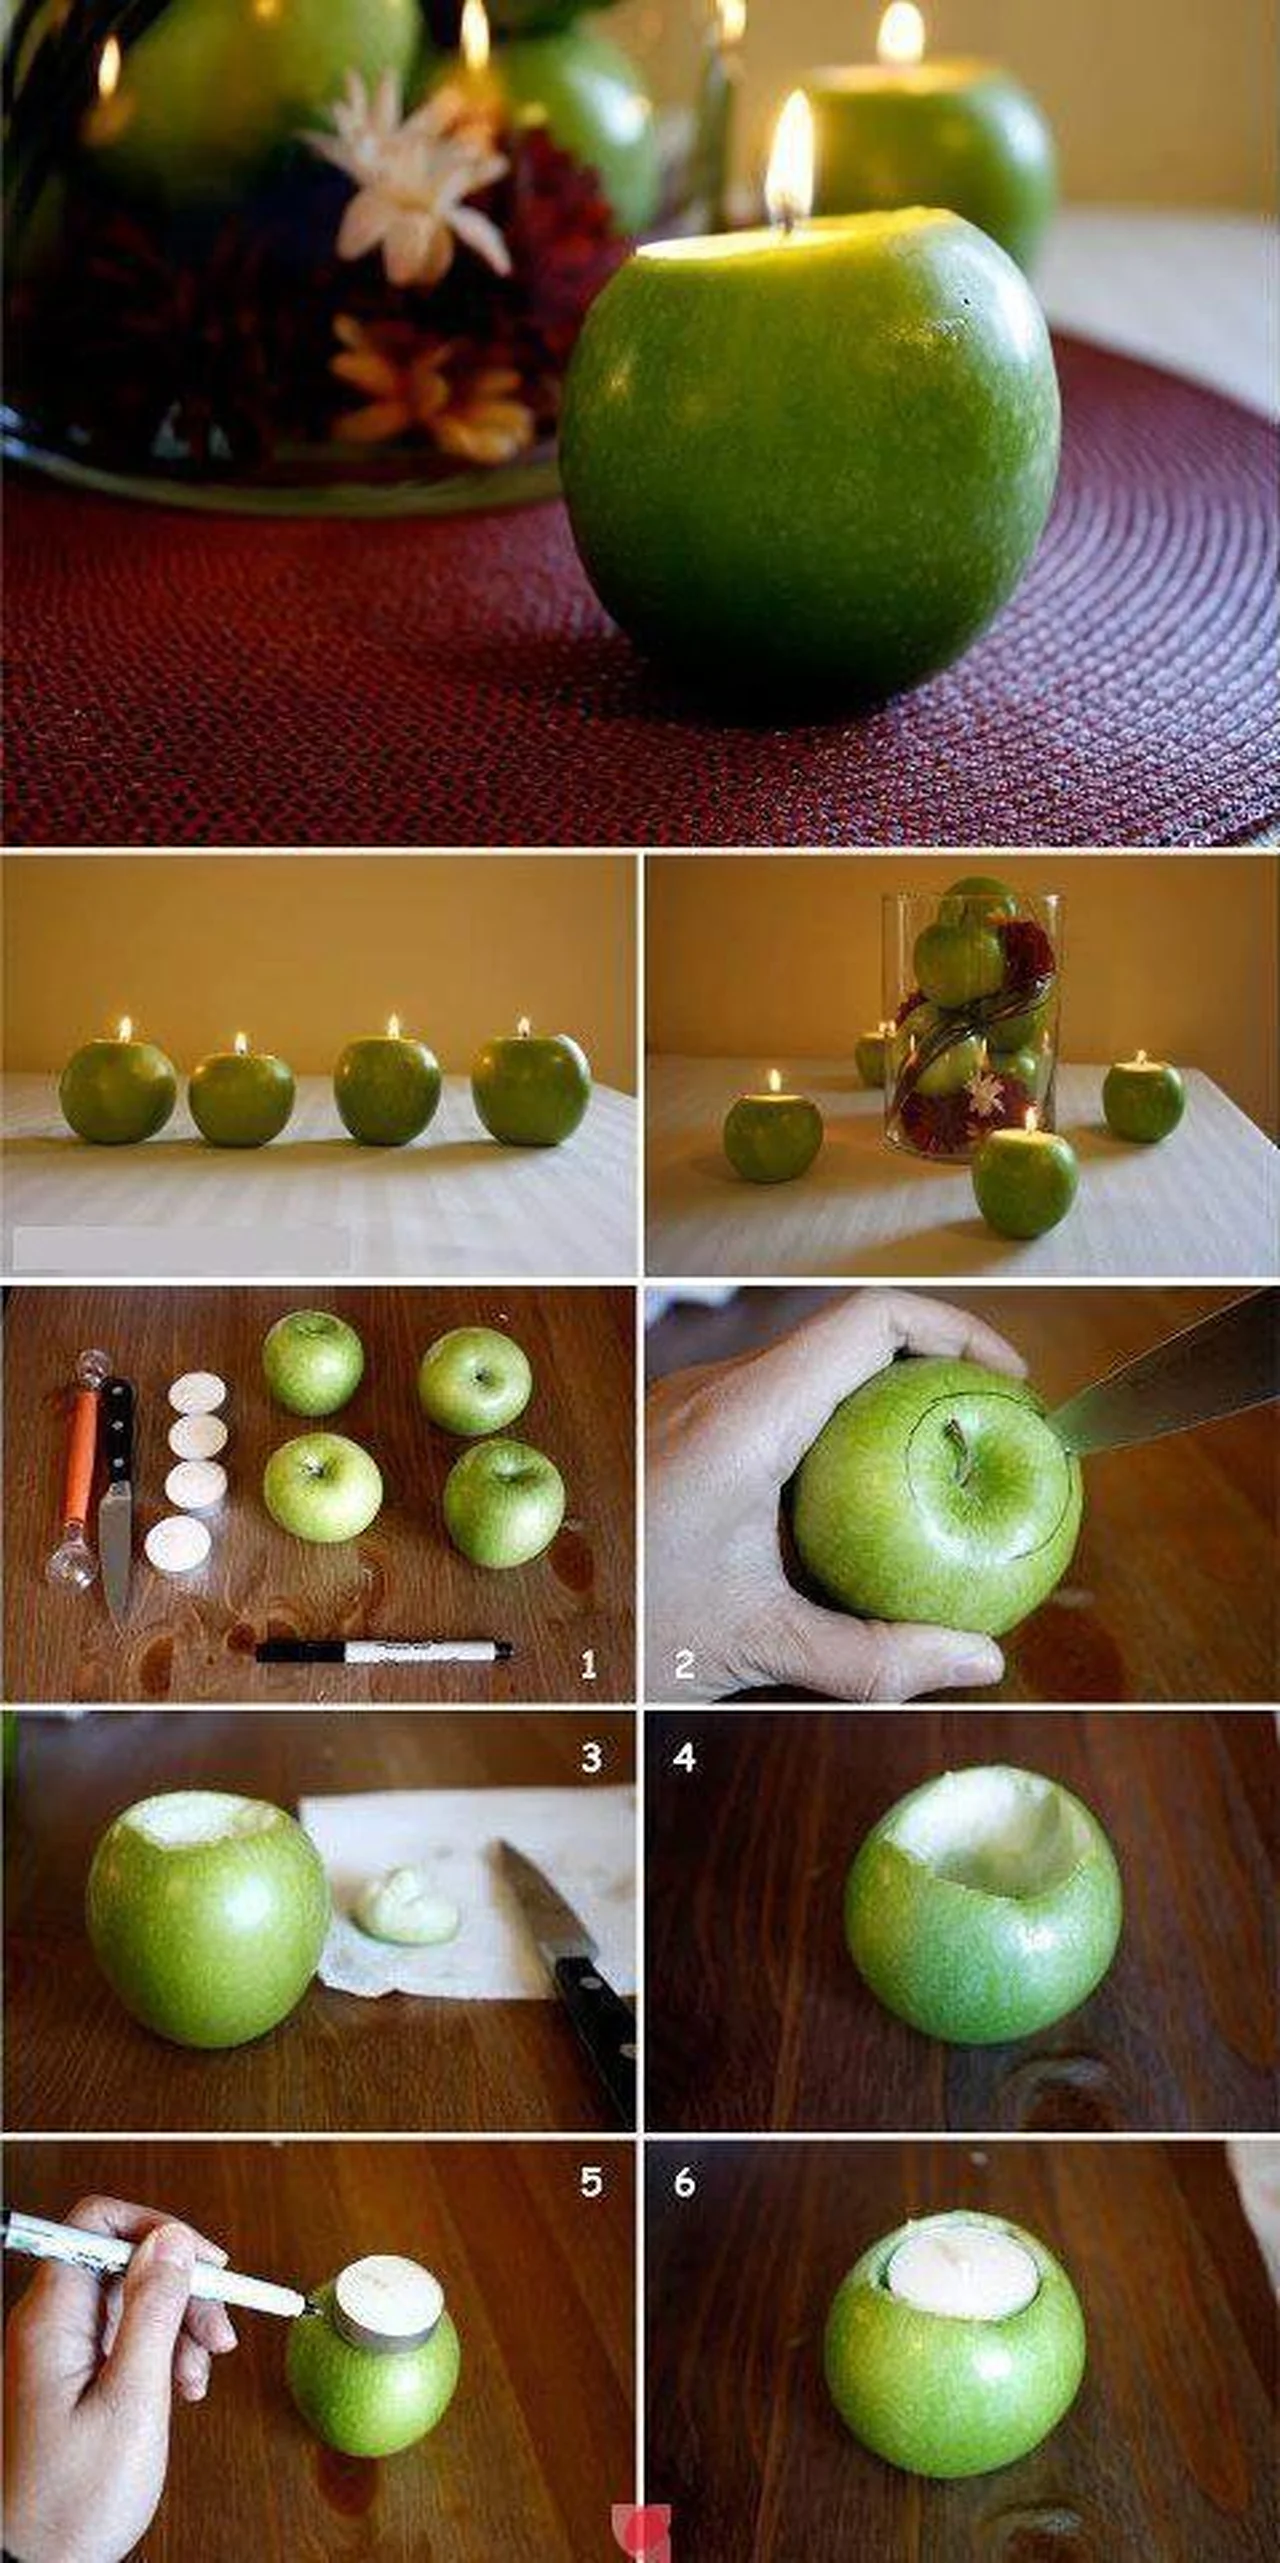 Owoce można wykorzystać jako świeczniki - instrukcja